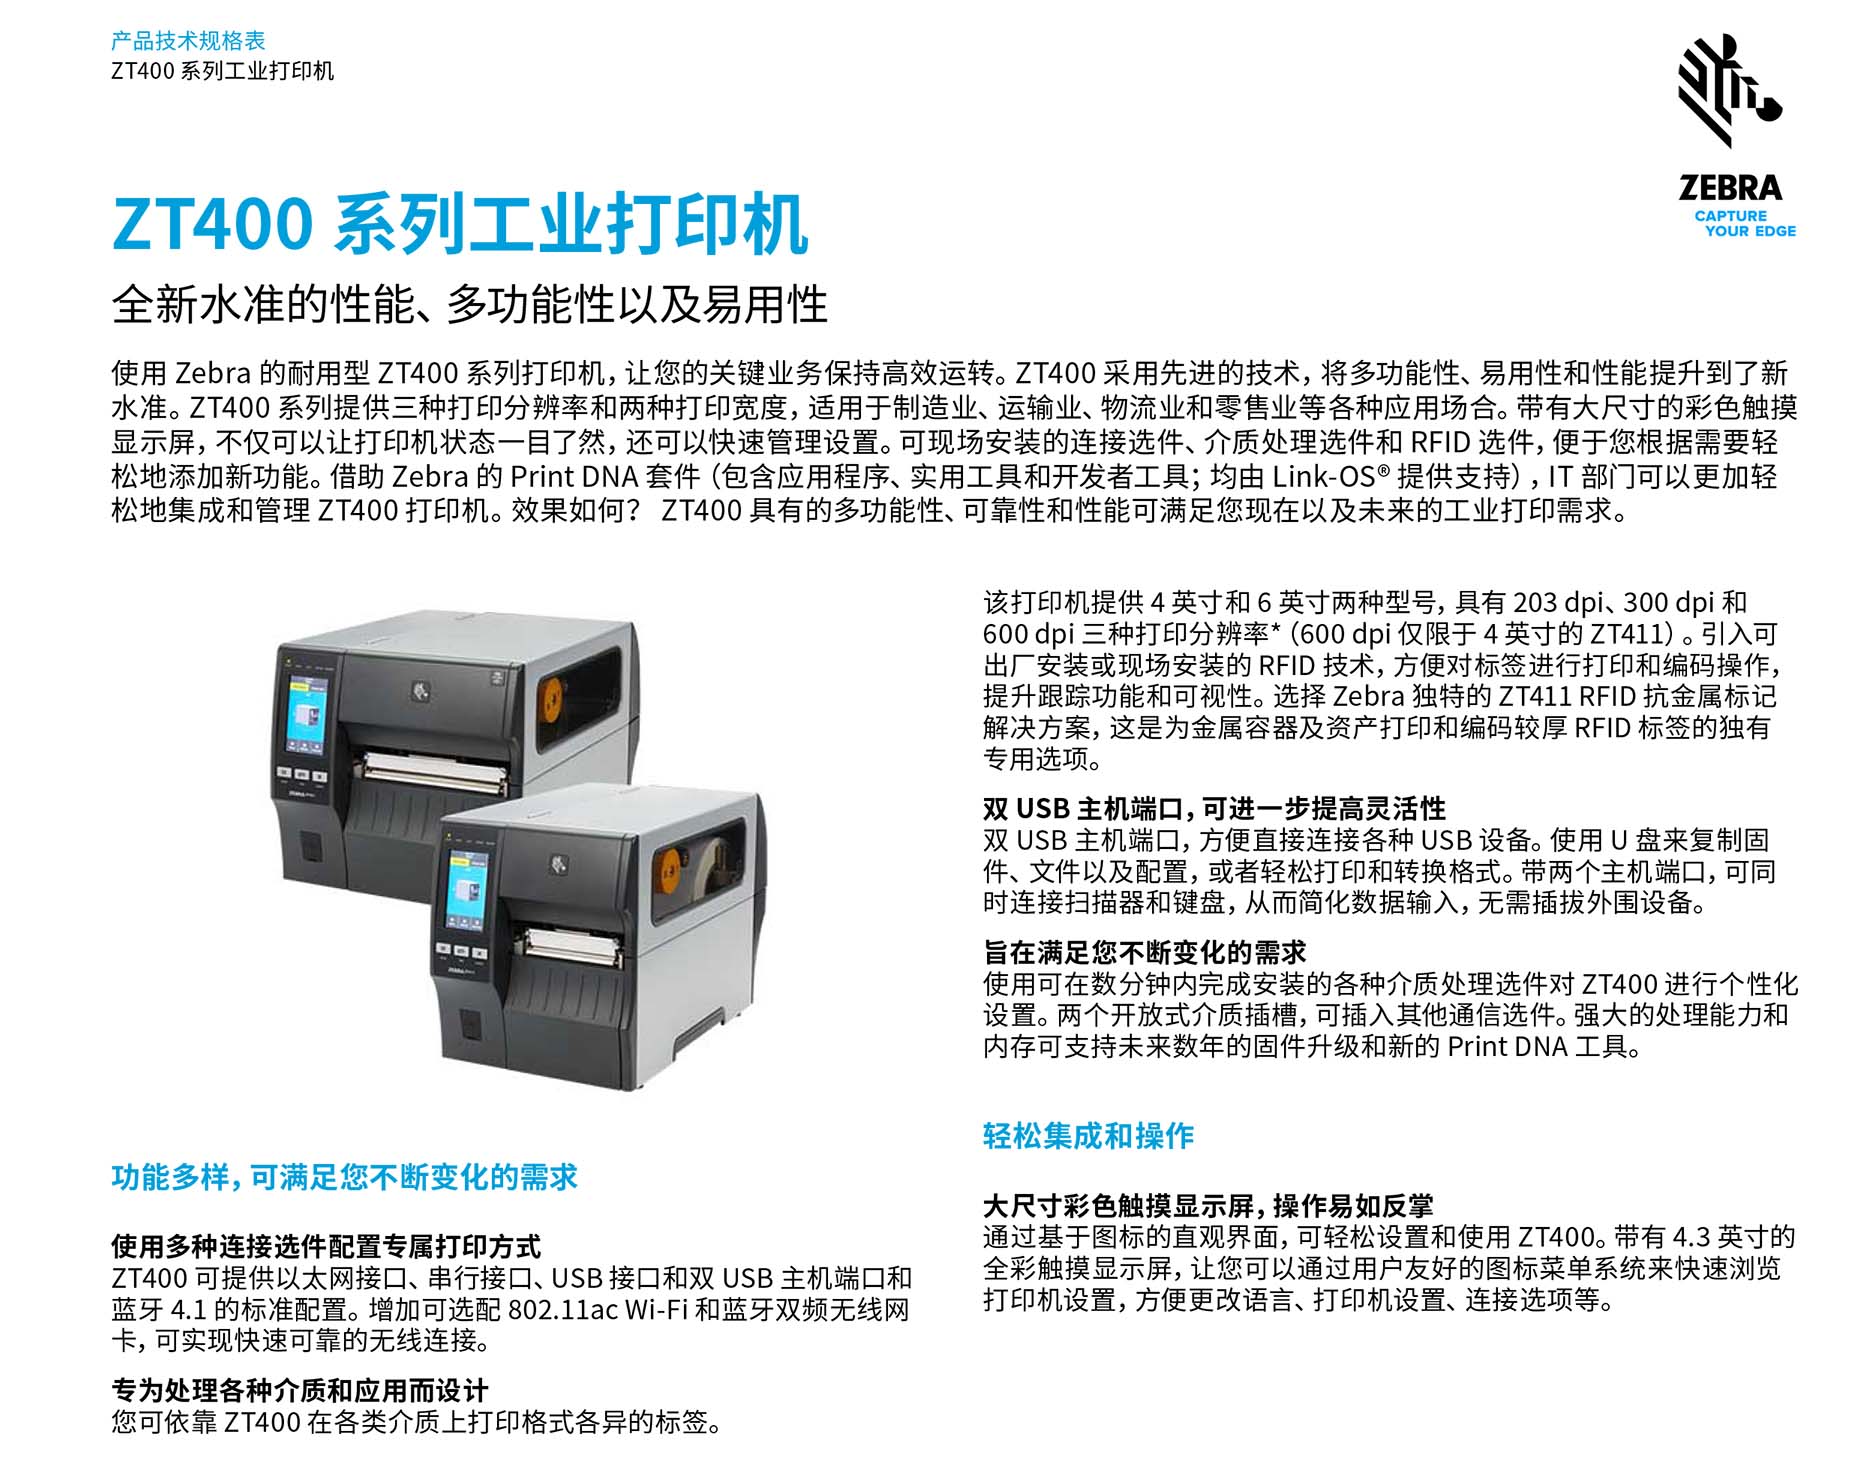 zt400-series-spec-sheet-zh-cn-1.jpg